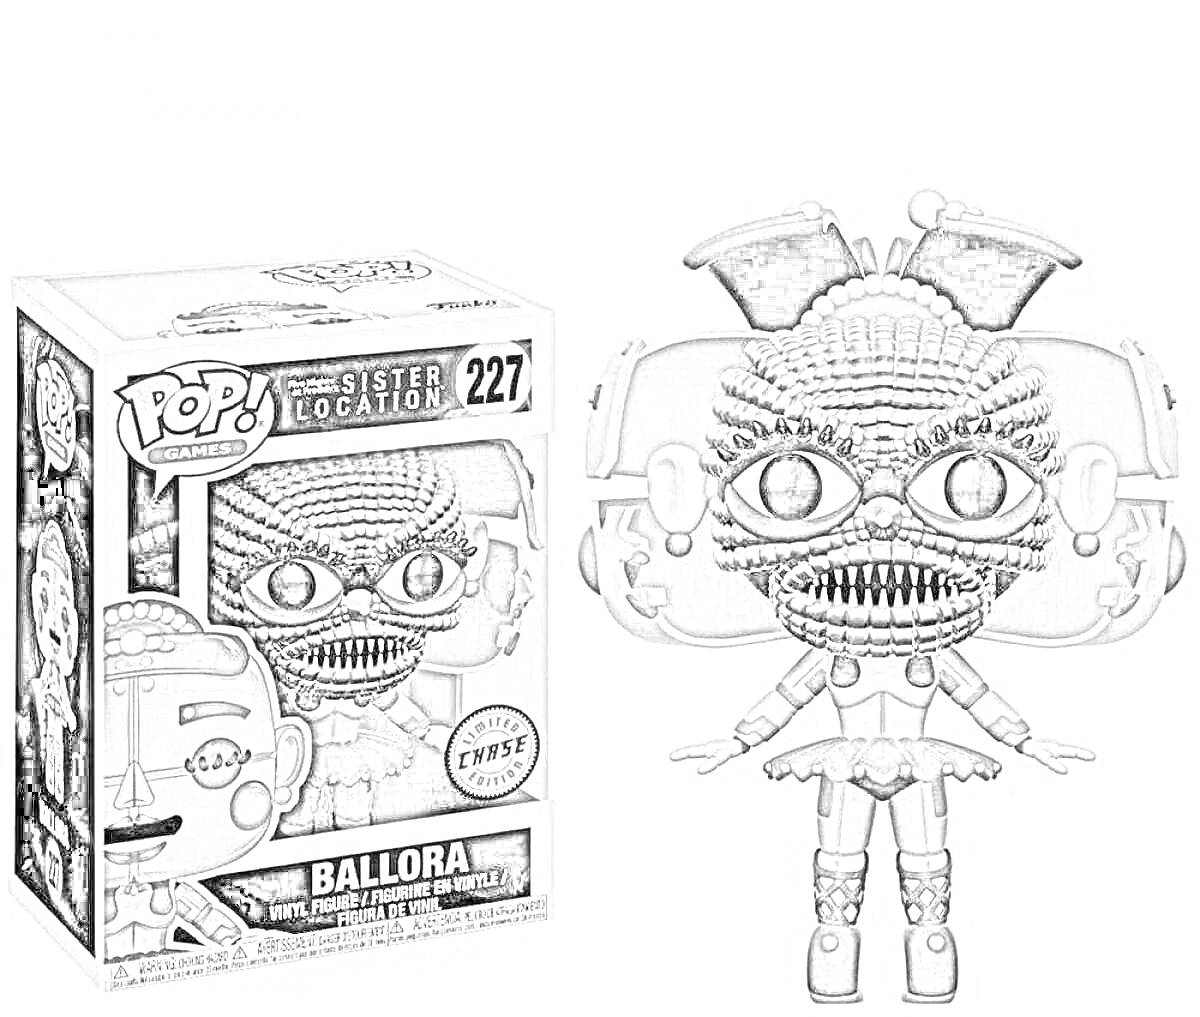 Раскраска Ballora аниматроник из серии Funko Pop! с коробкой на заднем плане